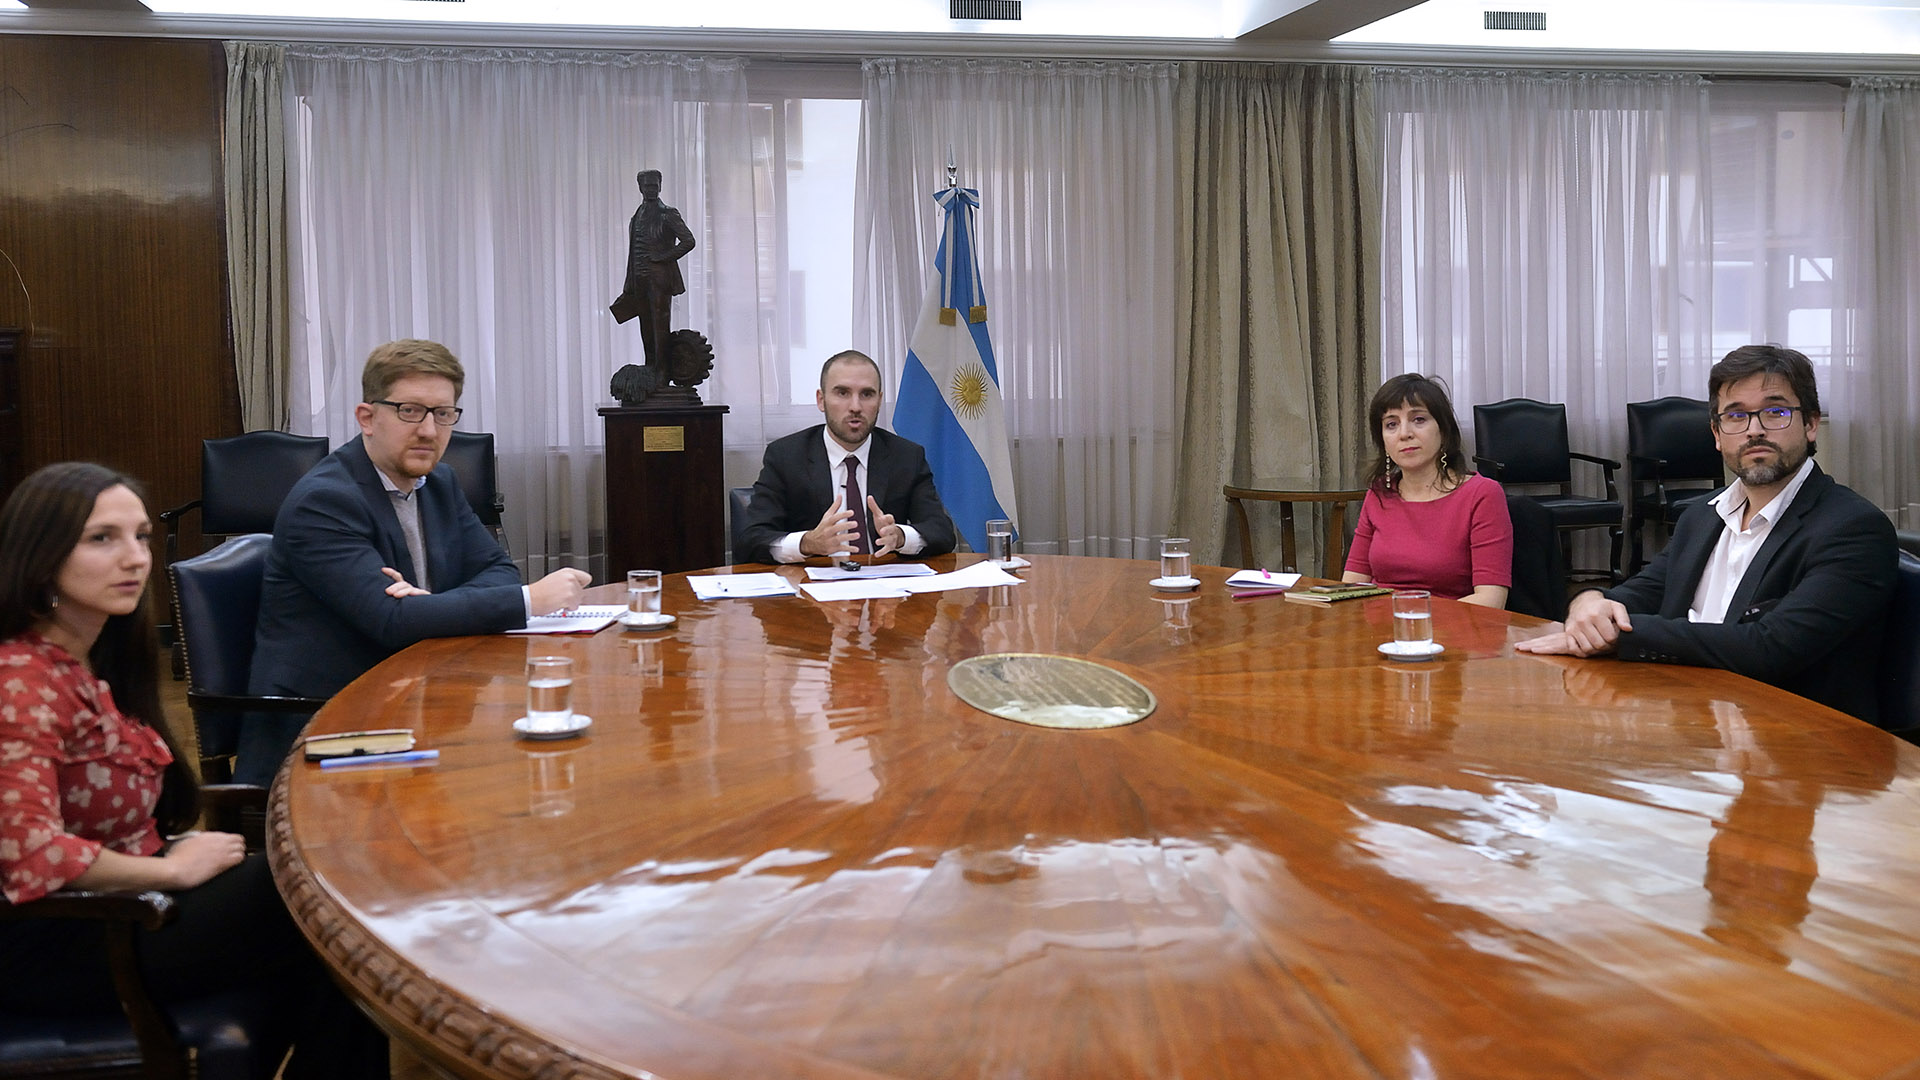 El ministro Guzmán y sus asesores, durante la reunión "virtual" con académicos organizada por Stiglitz desde la Universidad de Columbia